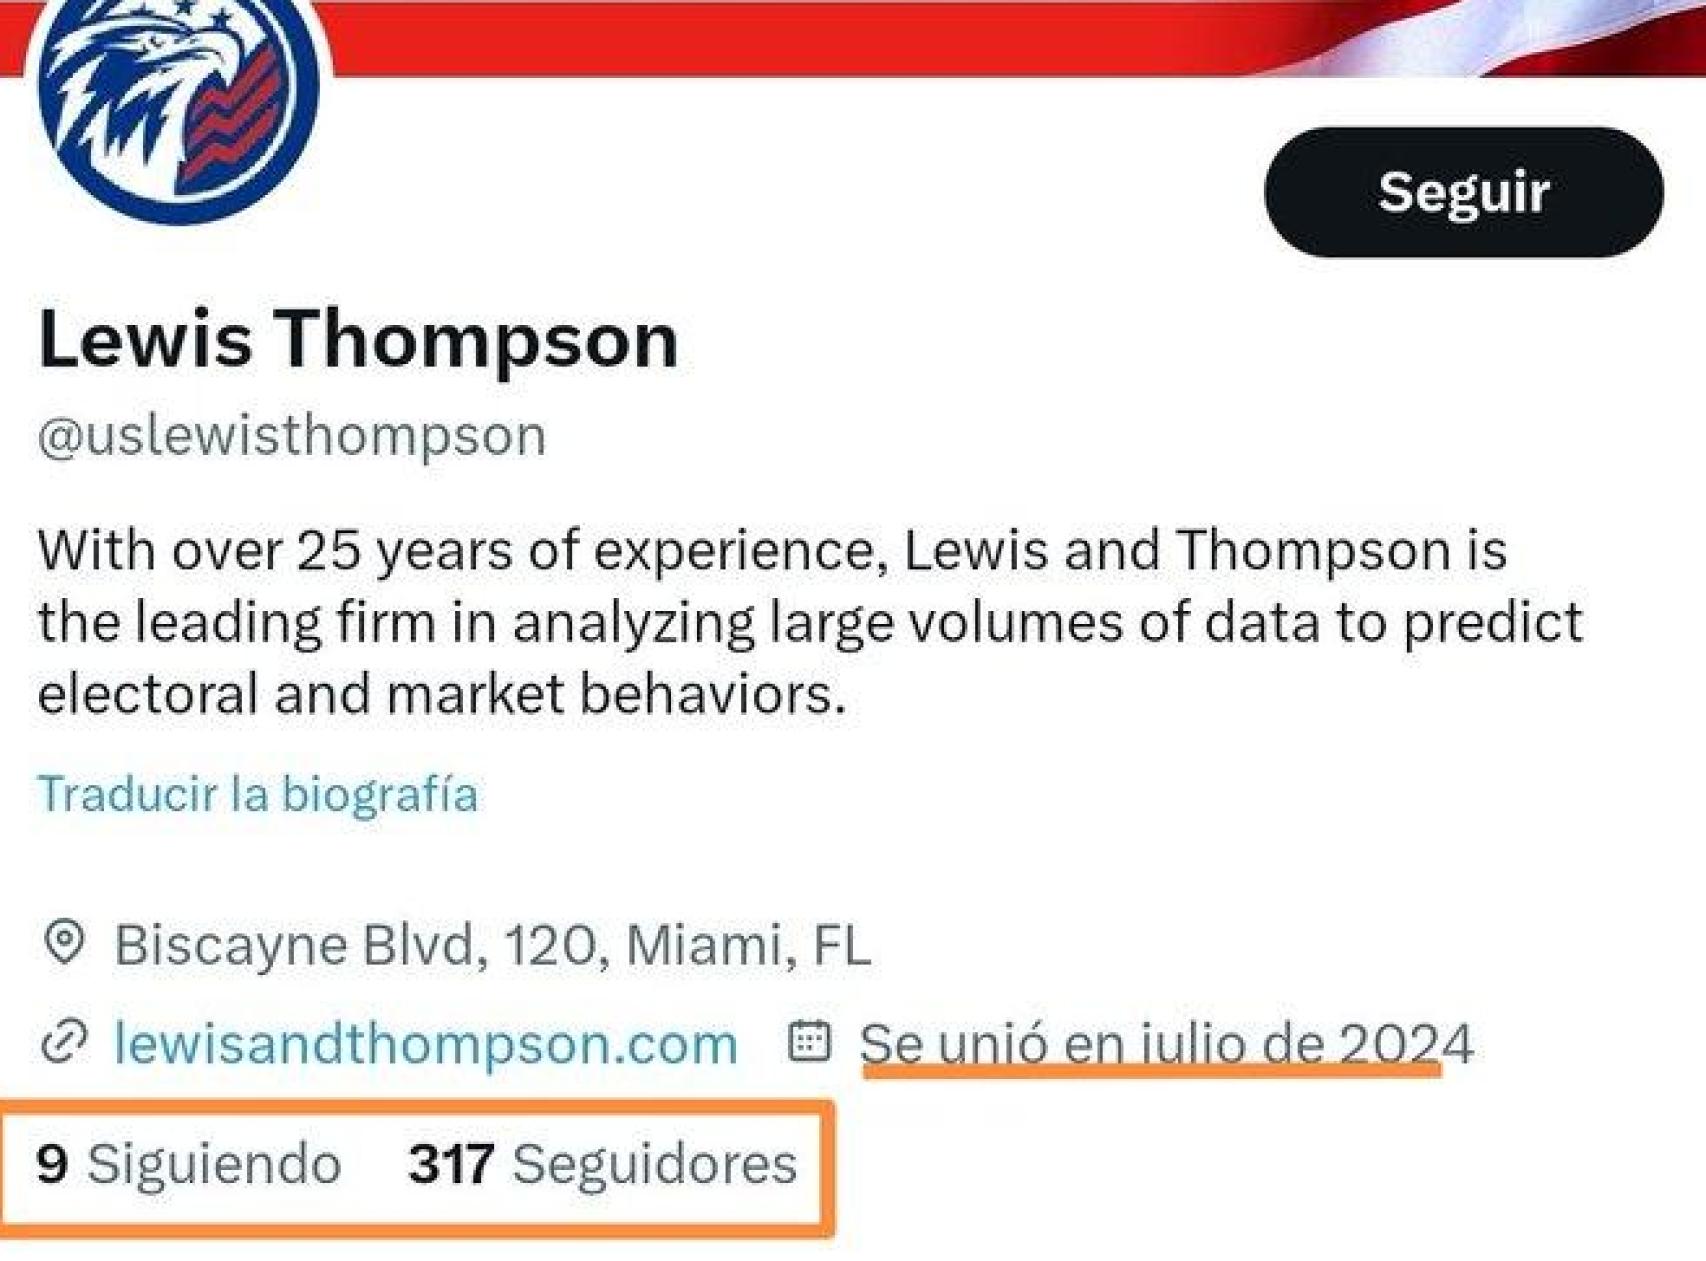 El perfil de Twitter de la consultora ficticia Lewis and Thompson Analytic Data, creado este mes de julio.